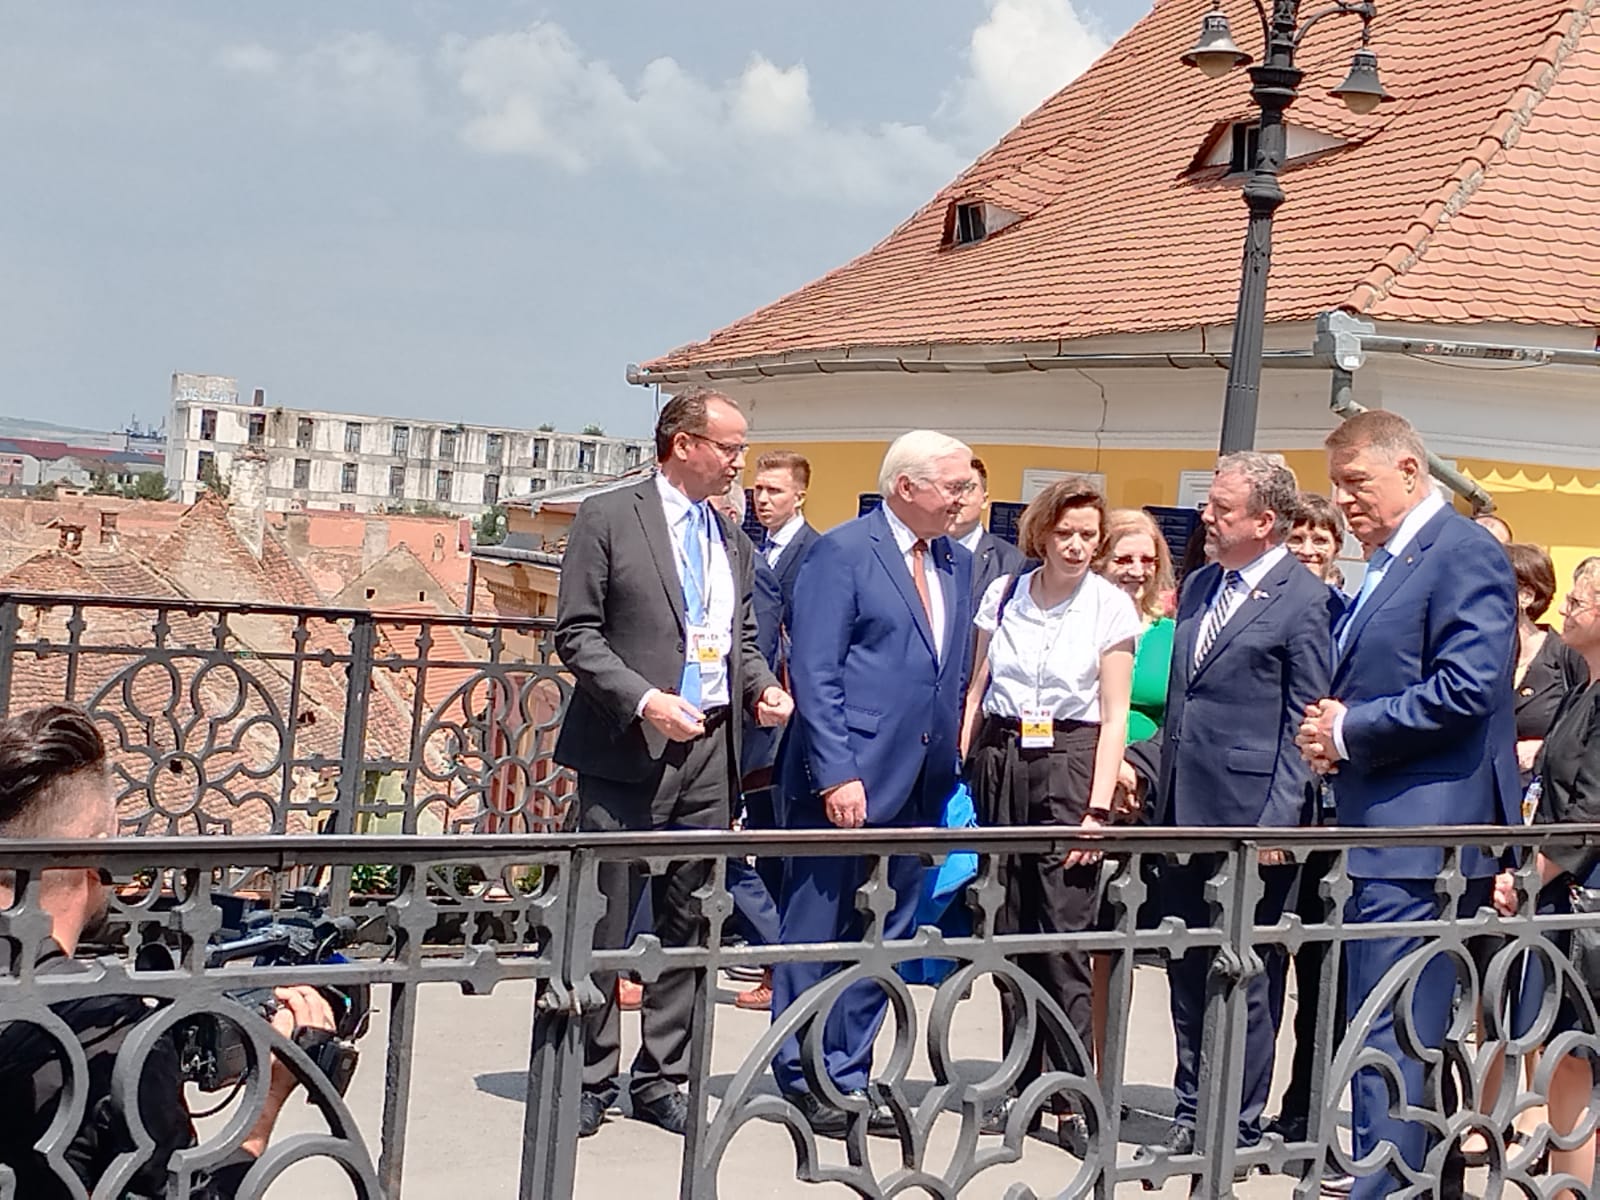 Președintele Germaniei și președintele României, împreună la Sibiu / Foto: mesageruldesibiu.ro